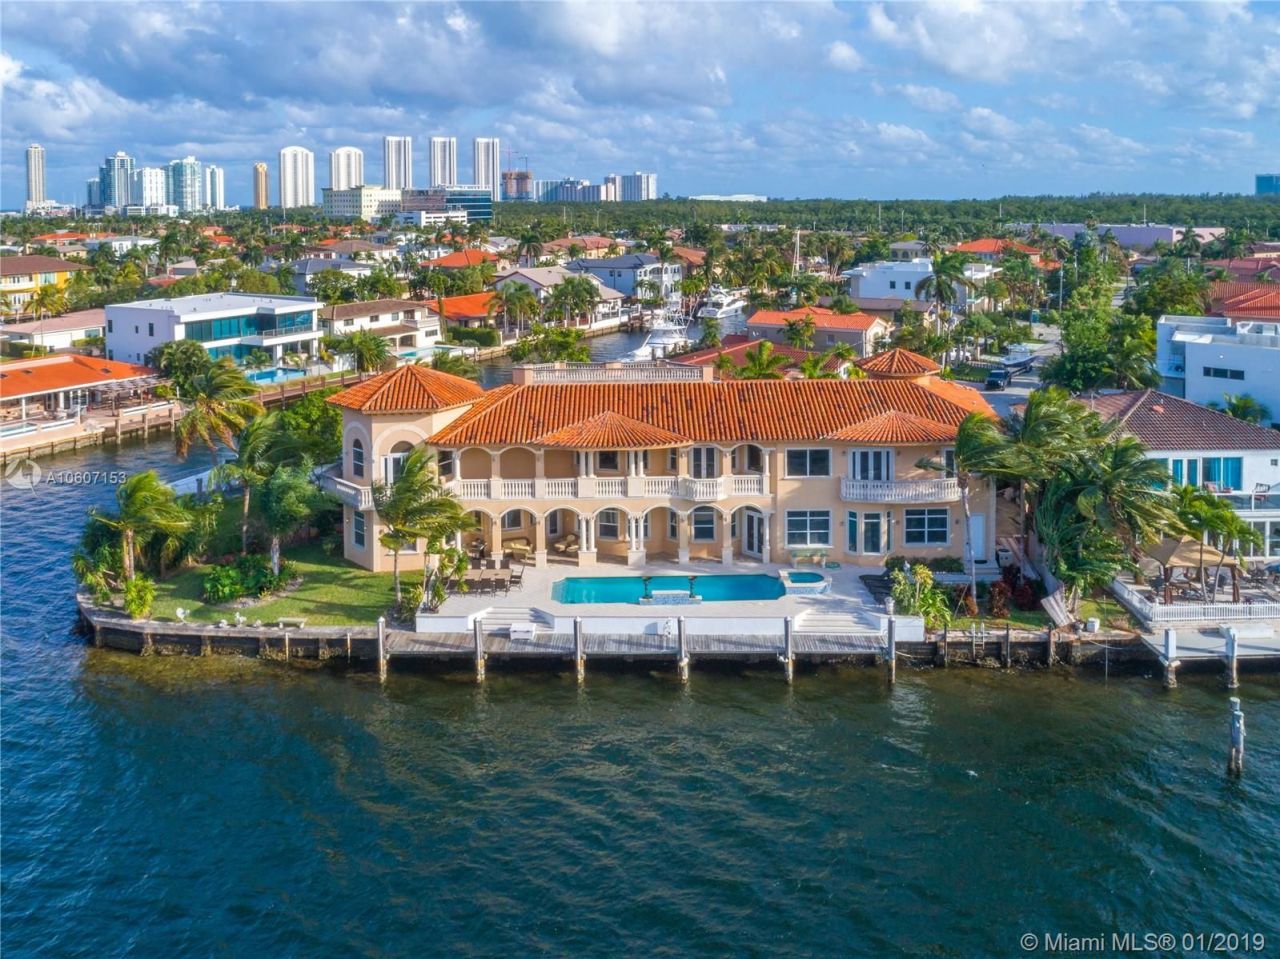 Villa in Miami, USA, 780 sq.m - picture 1